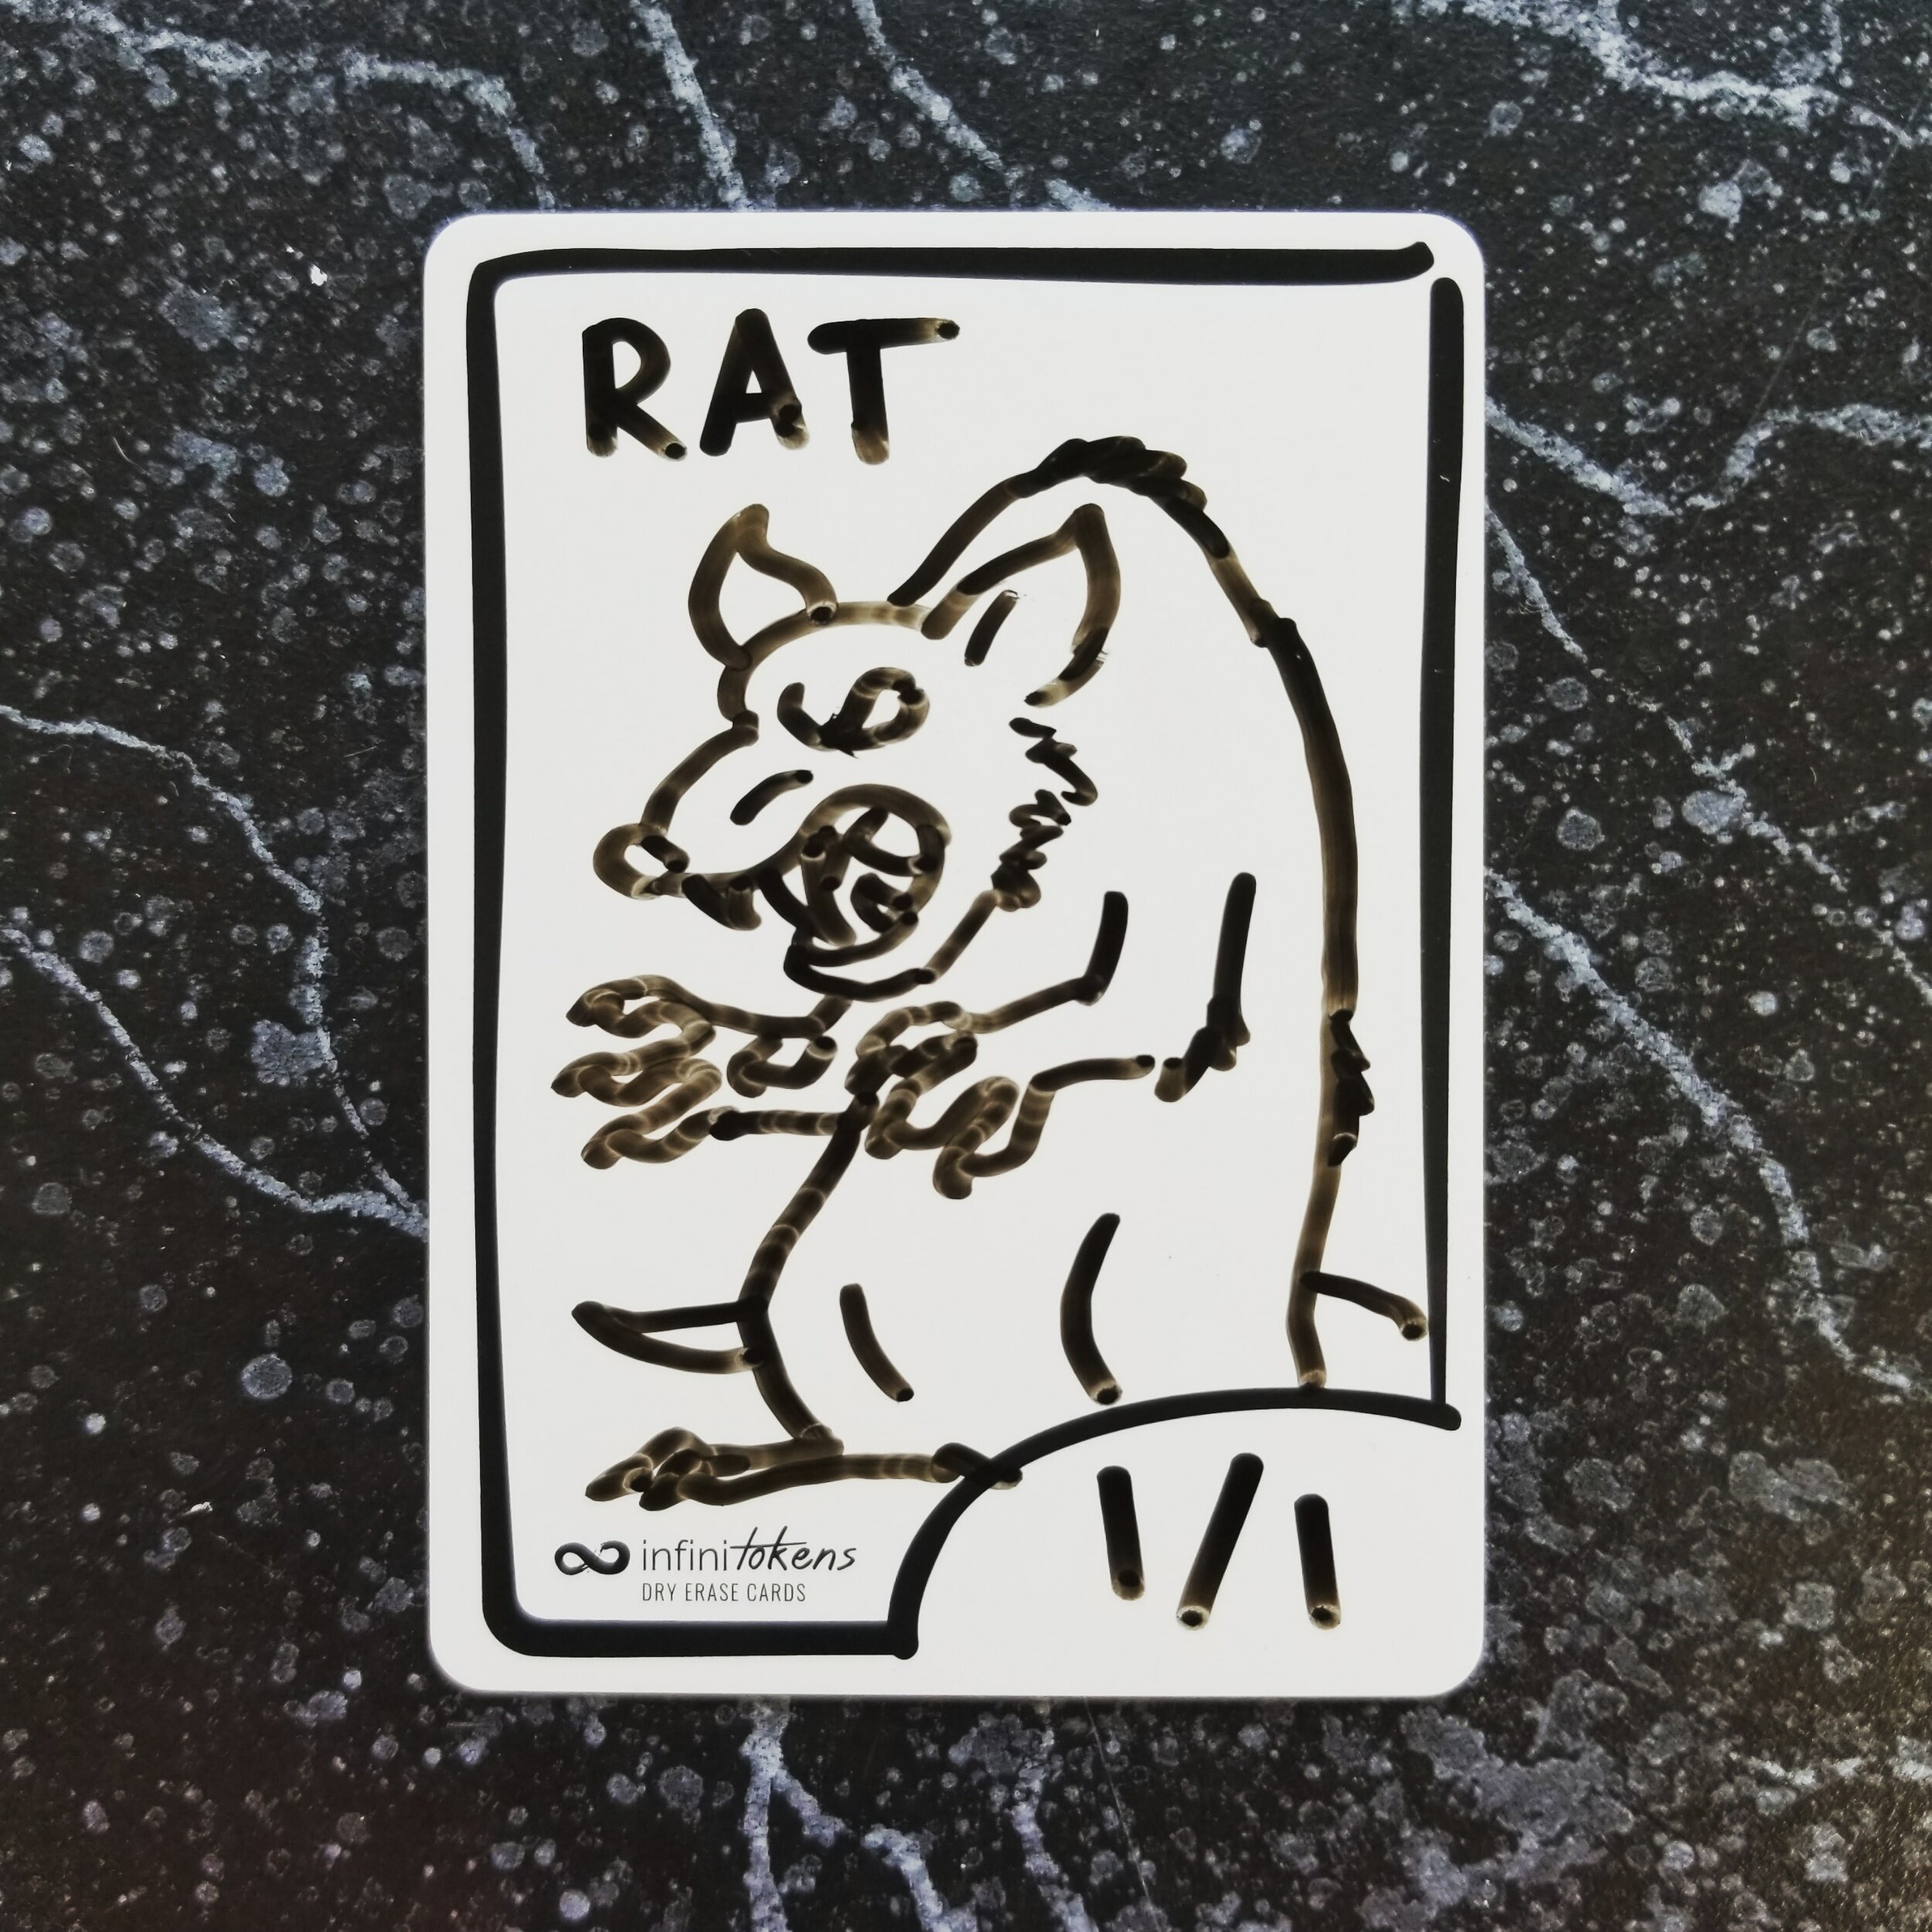 Day 30 - Rat